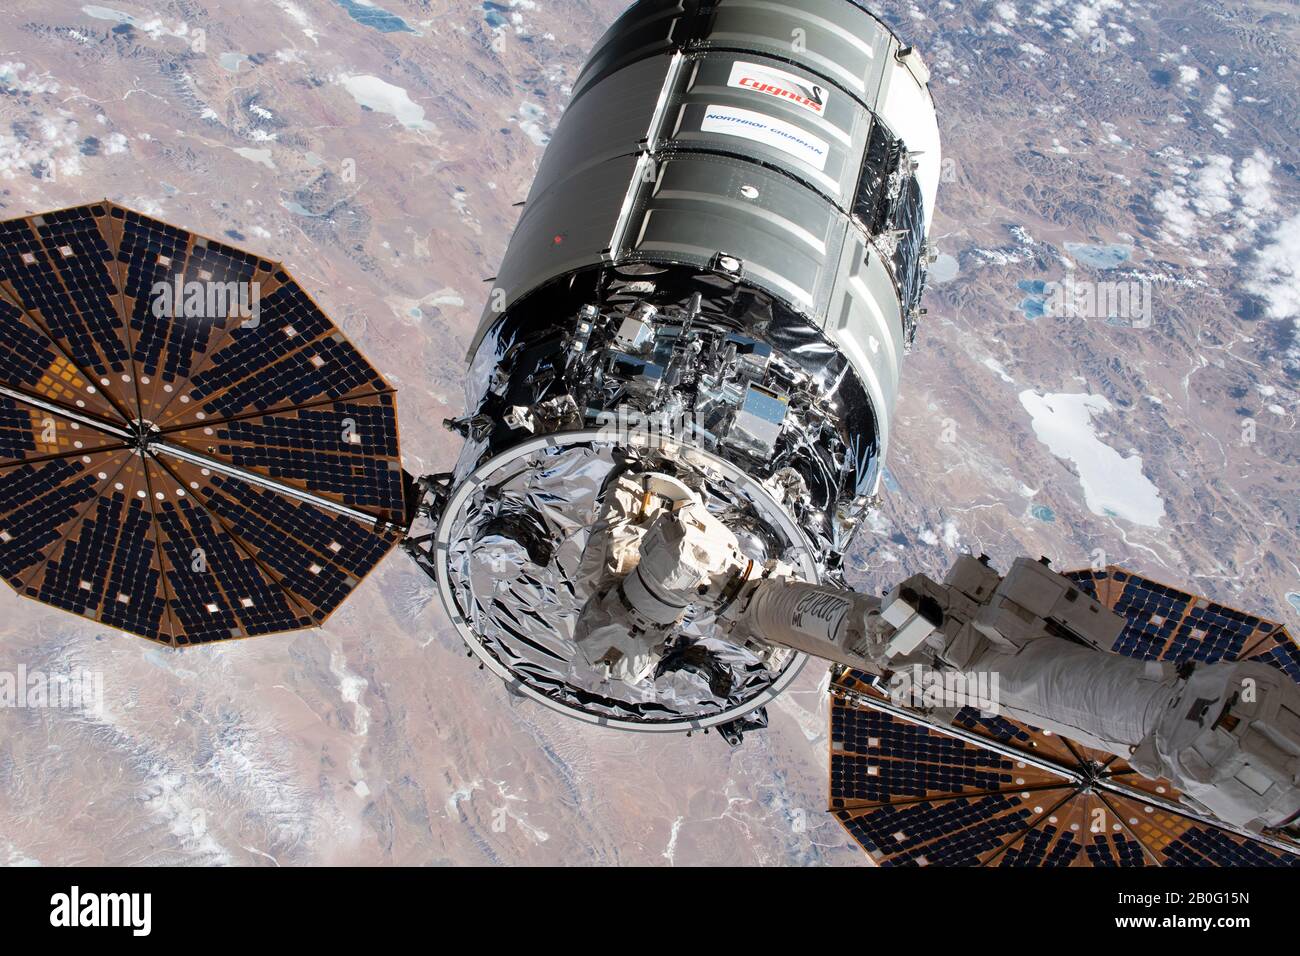 La navicella spaziale Northrop Grumman Cygnus con i distinti pannelli solari a forma di piatto è applizzata dalla CanadaArm2 per l'attracco alla Stazione spaziale Internazionale 18 Febbraio 2020 in Earth Orbit. Il cargo non presidiato trasporta più di 7.500 libbre di rifornimenti per l'equipaggio del laboratorio orbitante. Foto Stock